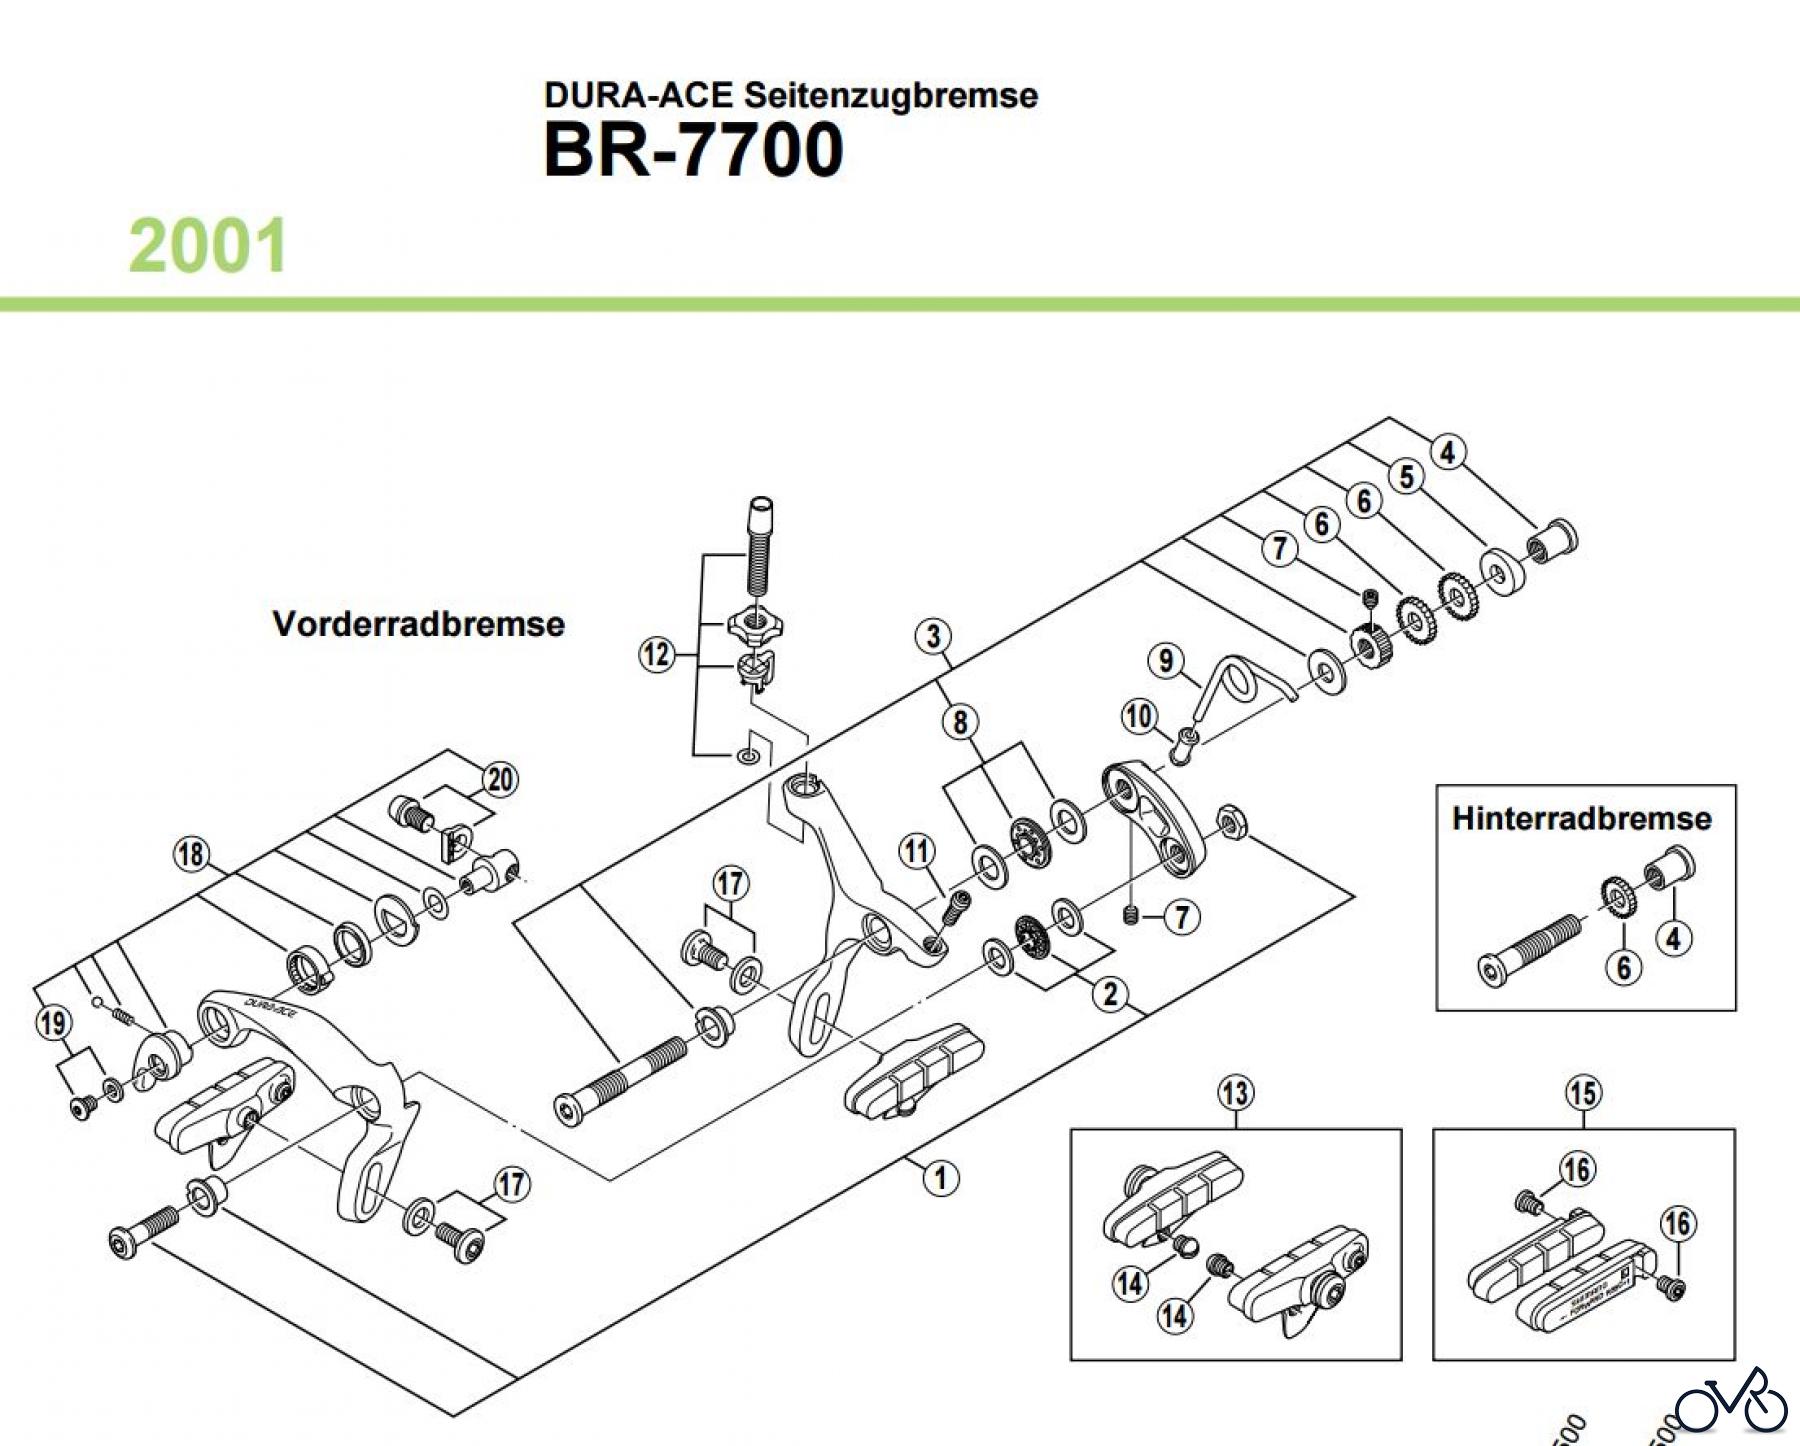  Shimano BR Brake - Bremse BR-7700 2001 DURA-ACE Seitenzugbremse